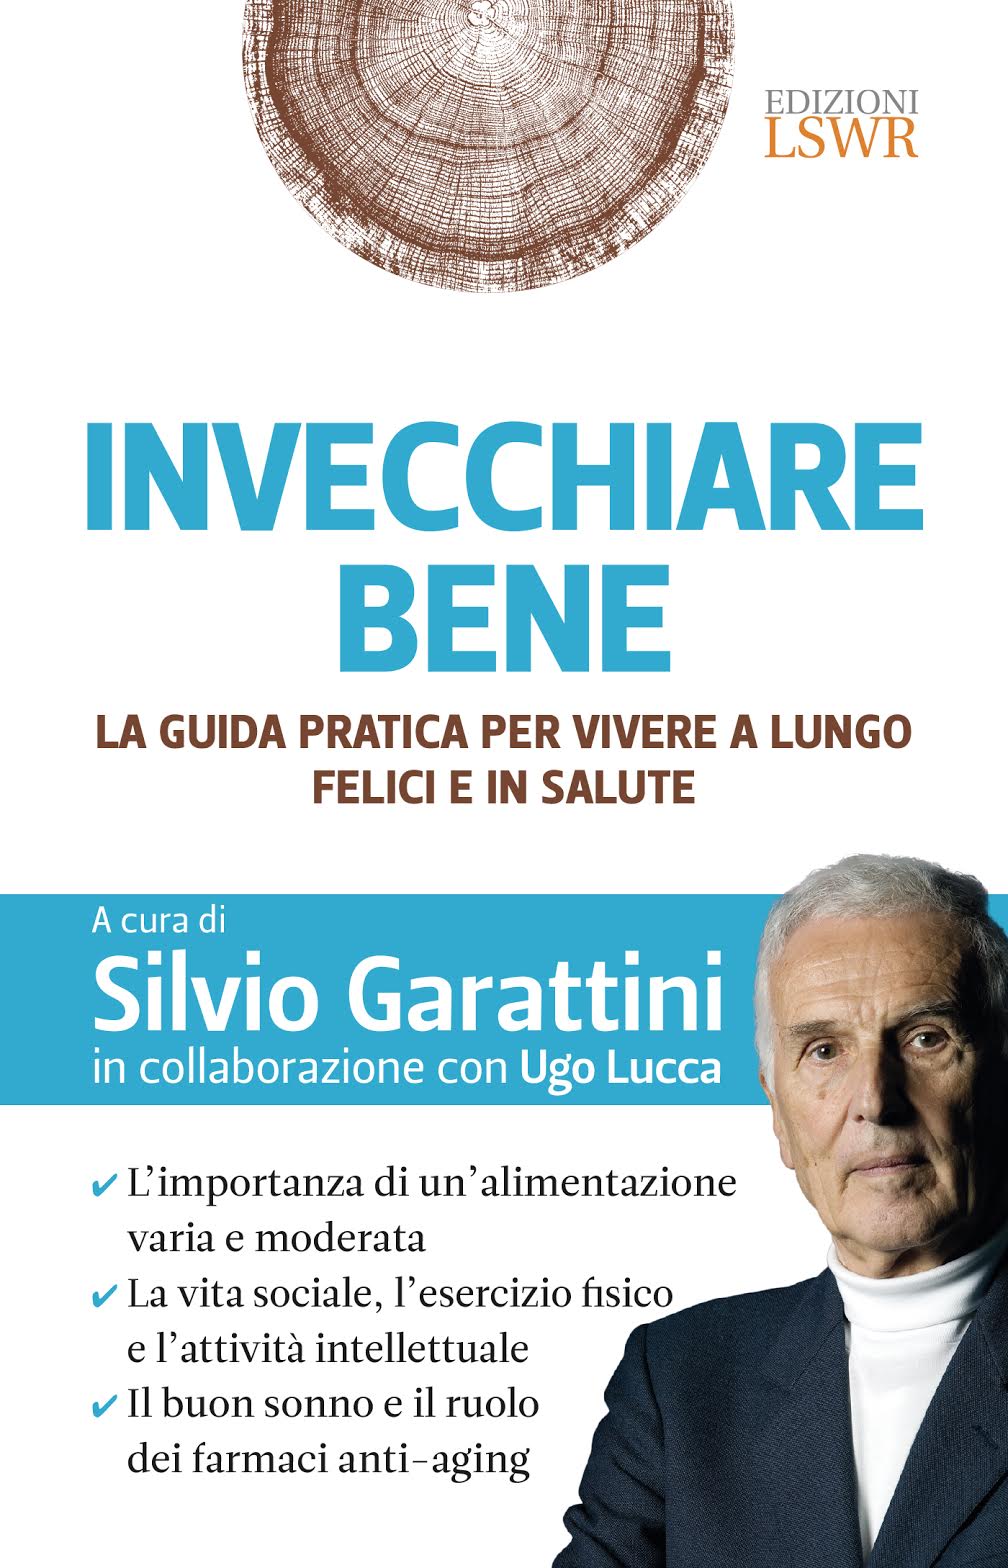 Silvio Garattini - invecchiare bene 